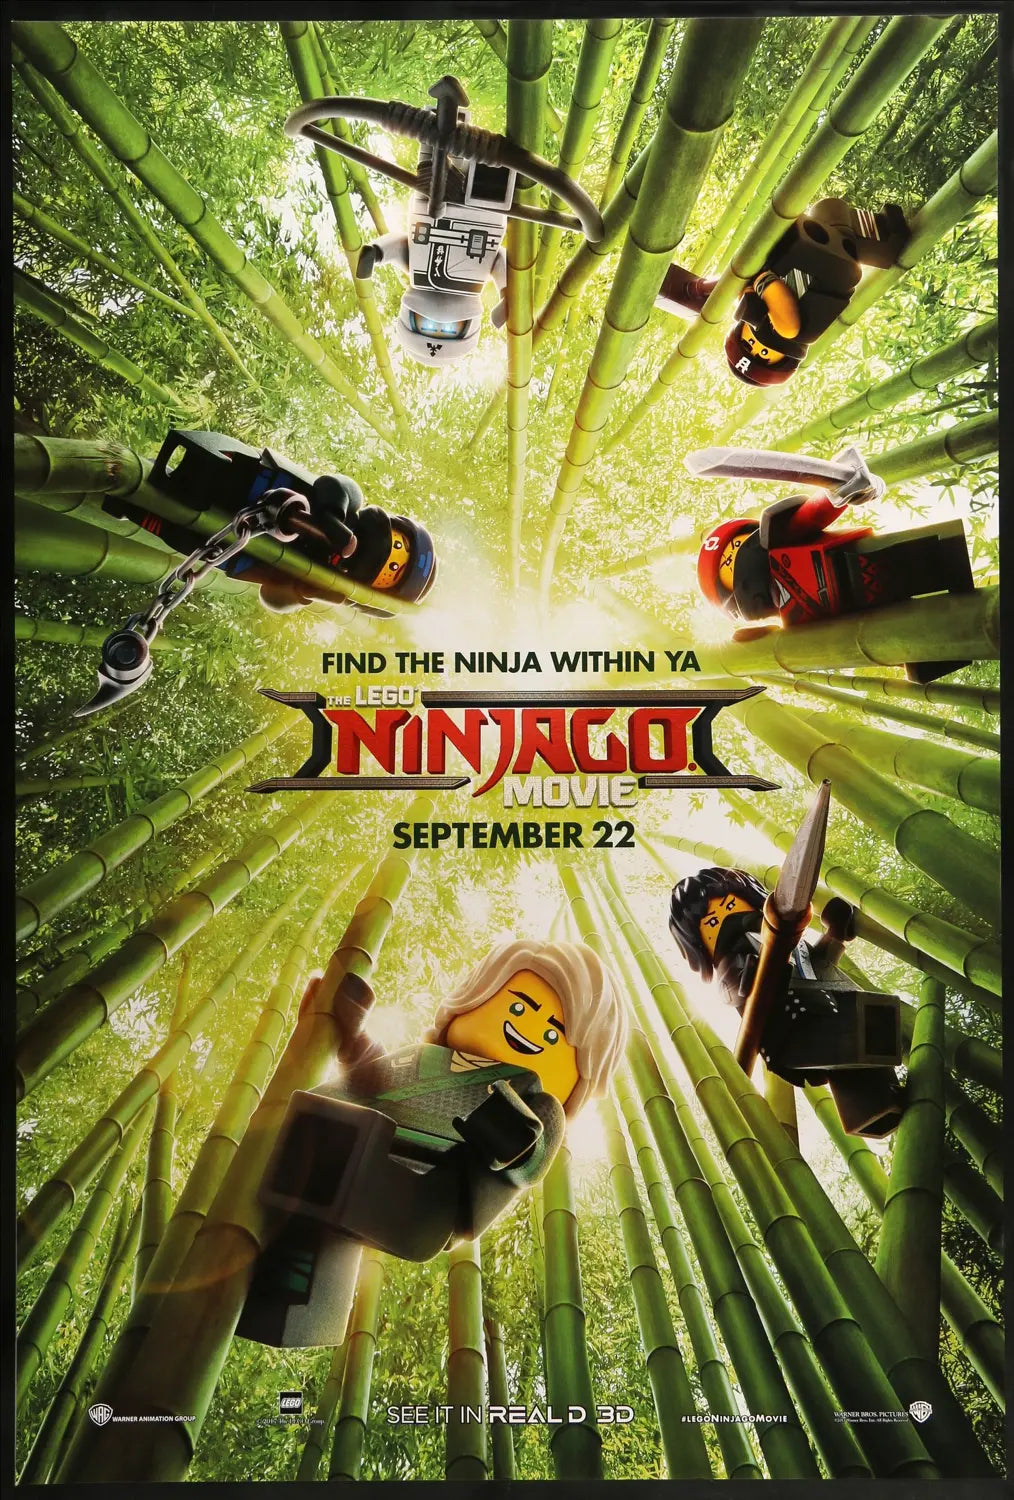 Lego Ninjago Movie (2017) original movie poster for sale at Original Film Art